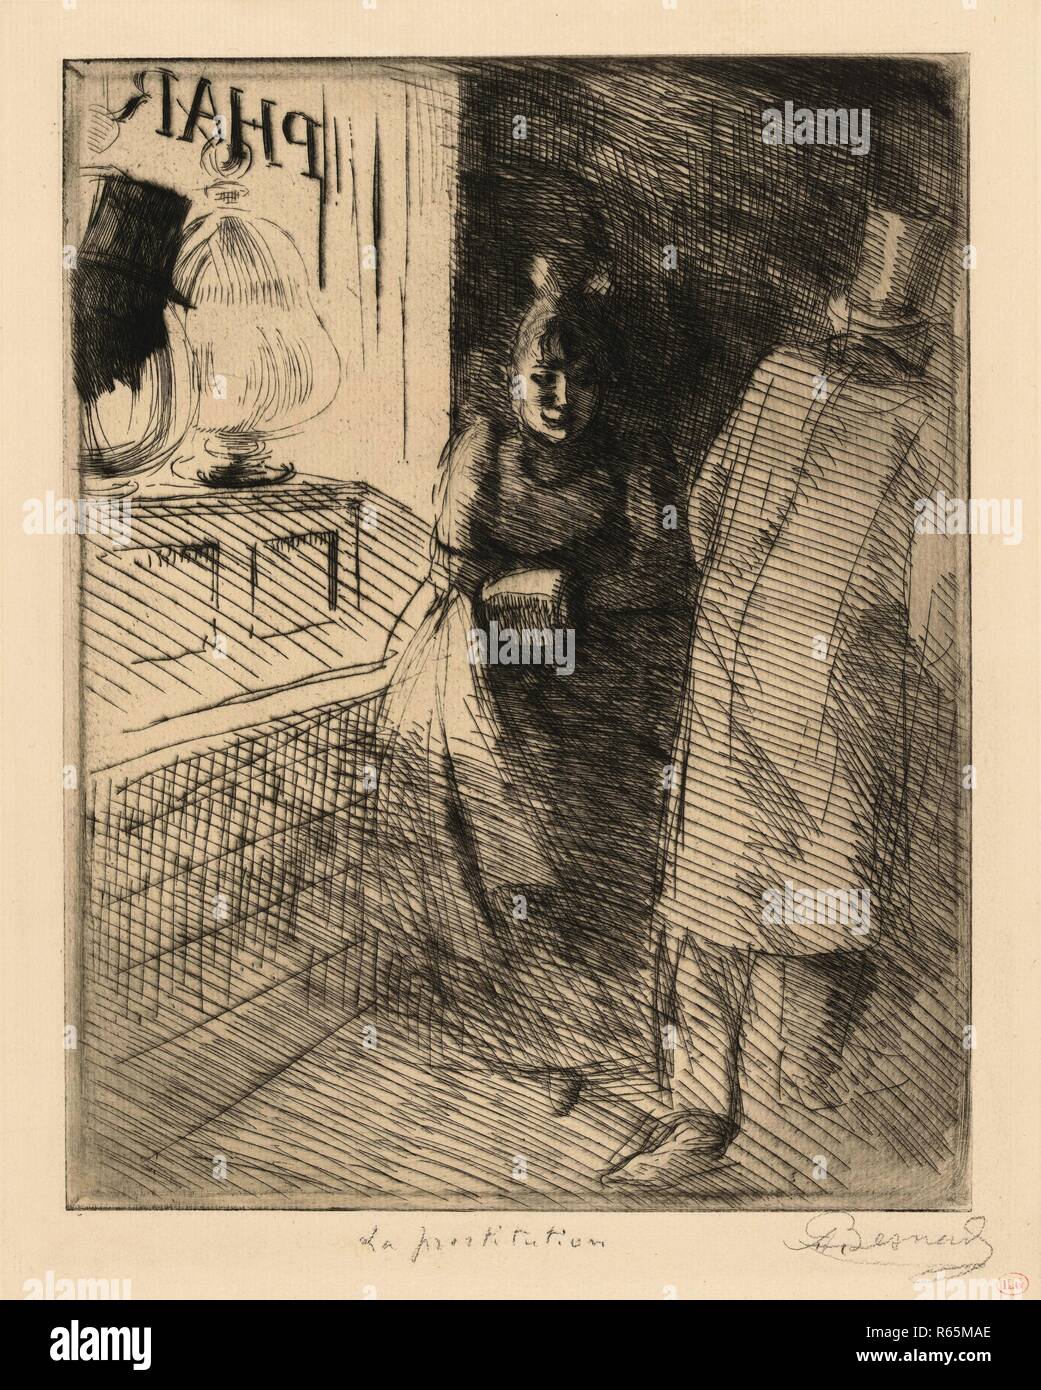 Prostitution (La prostitution). Dimensions: 44.5 cm x 31.7 cm, 31.2 cm x 24.5 cm, 31.2 cm x 24.5 cm. Museum: Van Gogh Museum, Amsterdam. Author: BESNARD, ALBERT. Albert Besnard. Stock Photo